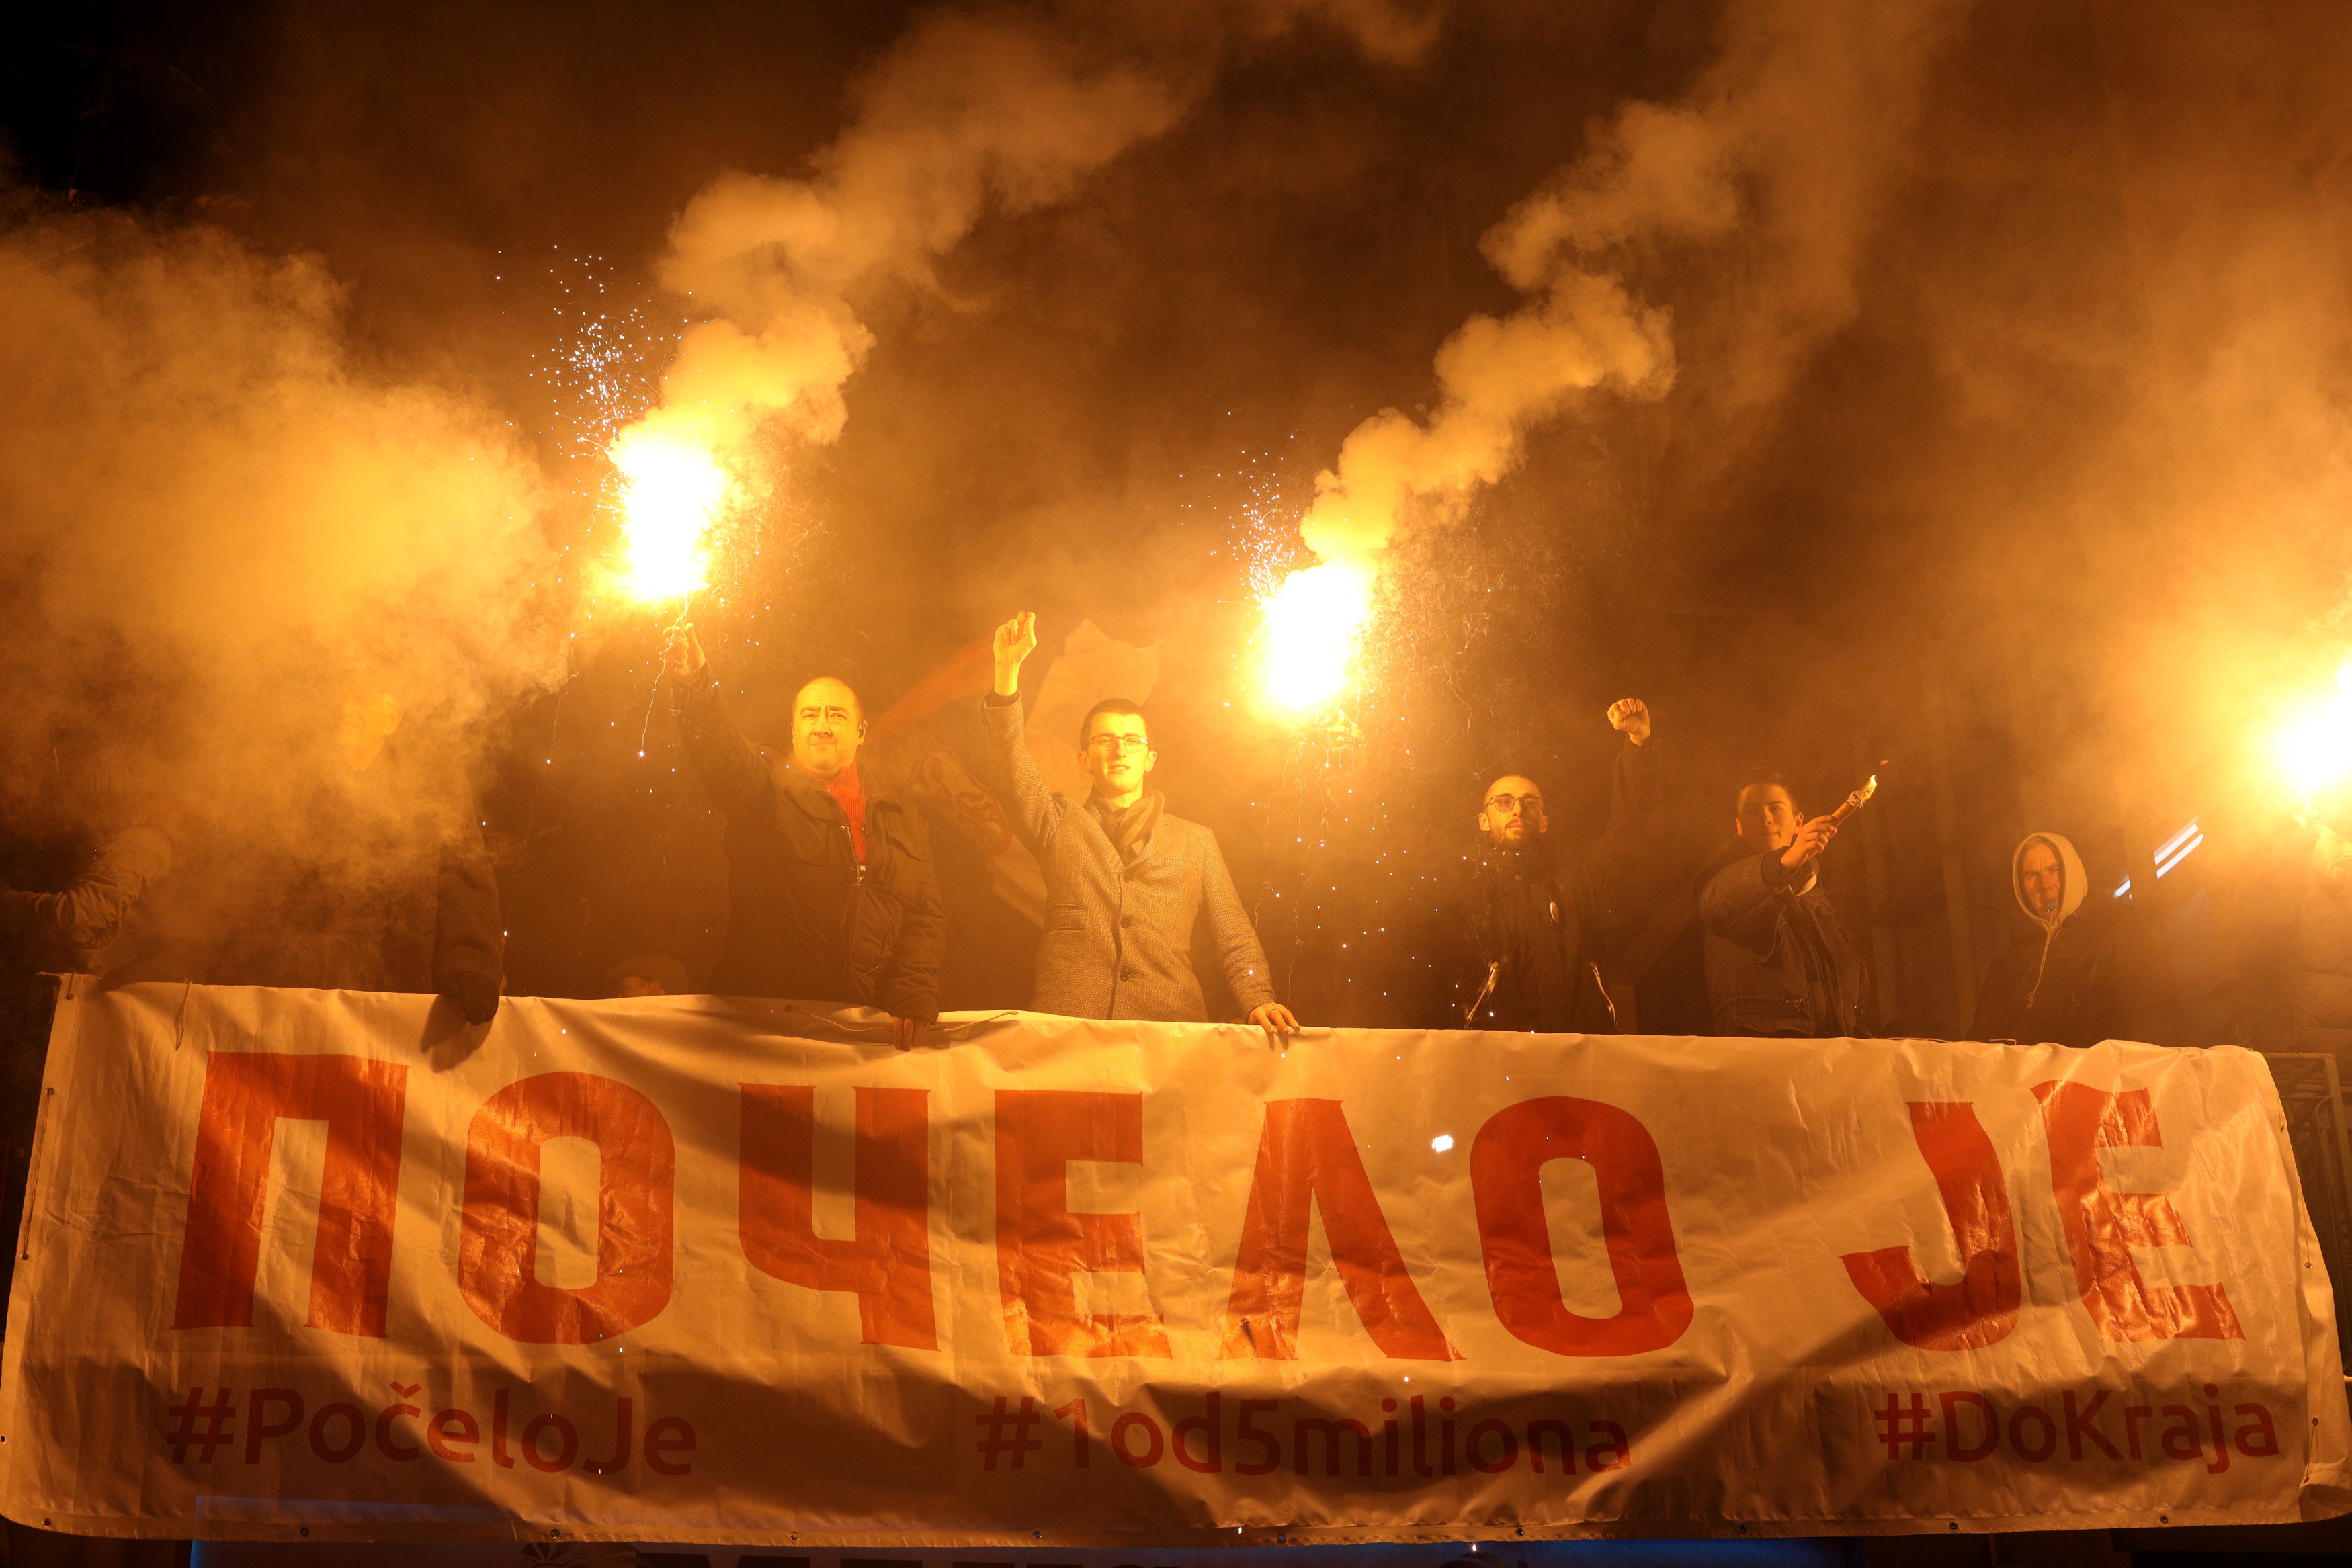    الاحتجاجات الحاشدة ضد الرئيس الصربى فى شوارع بلجراد (2)